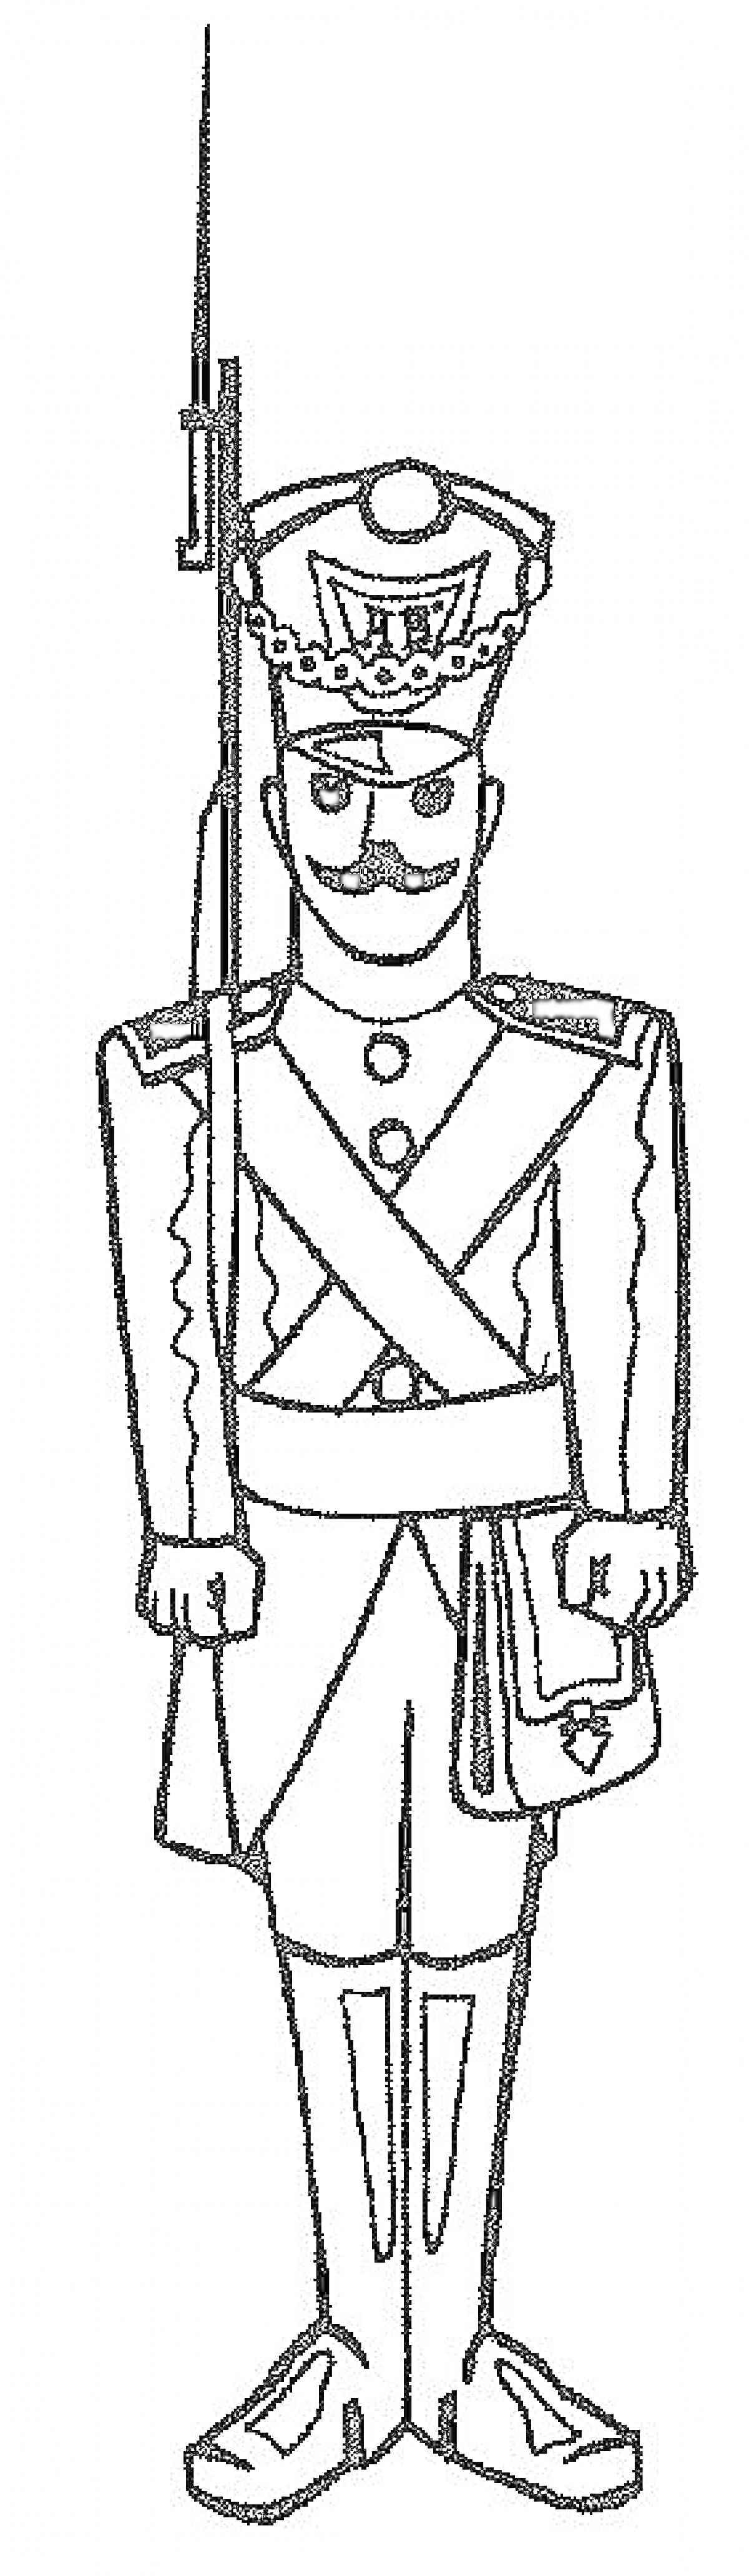 Солдатик в форме с мушкетом и усами, с кивером на голове и сумкой через плечо.